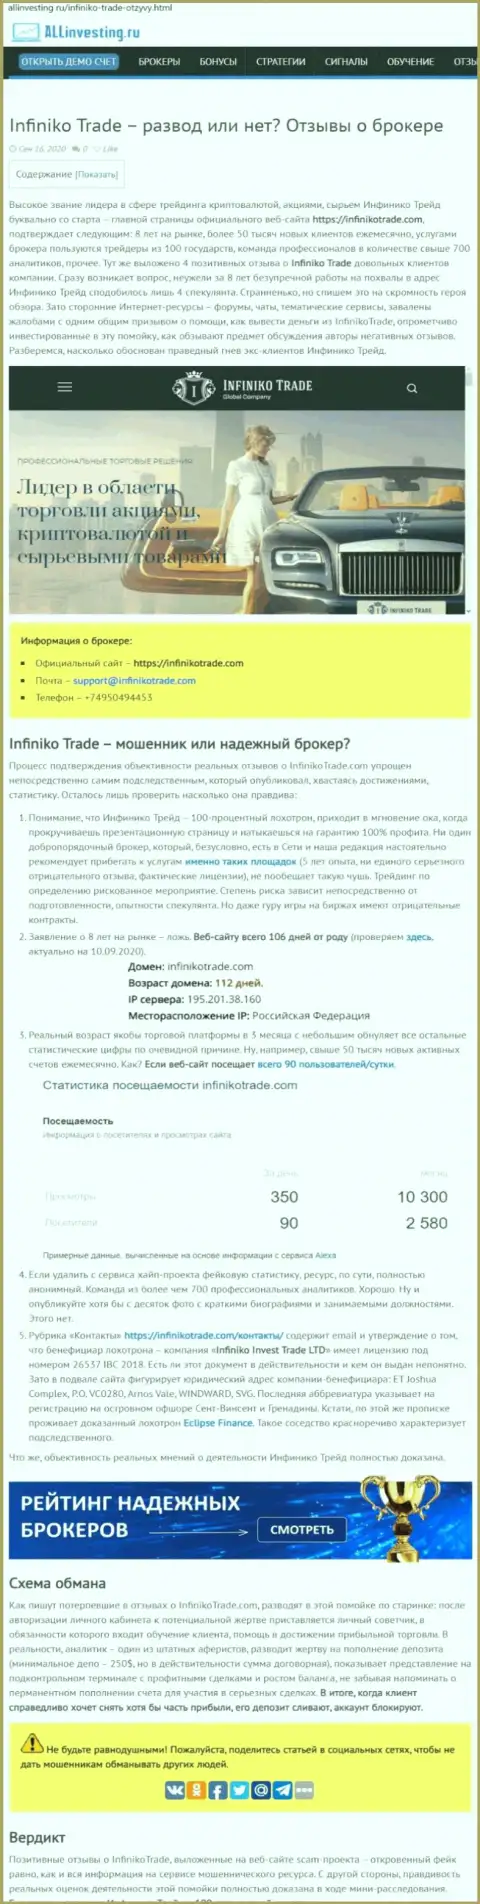 Infiniko Trade явные мошенники, будьте очень бдительны доверяя им (обзор мошеннических деяний)